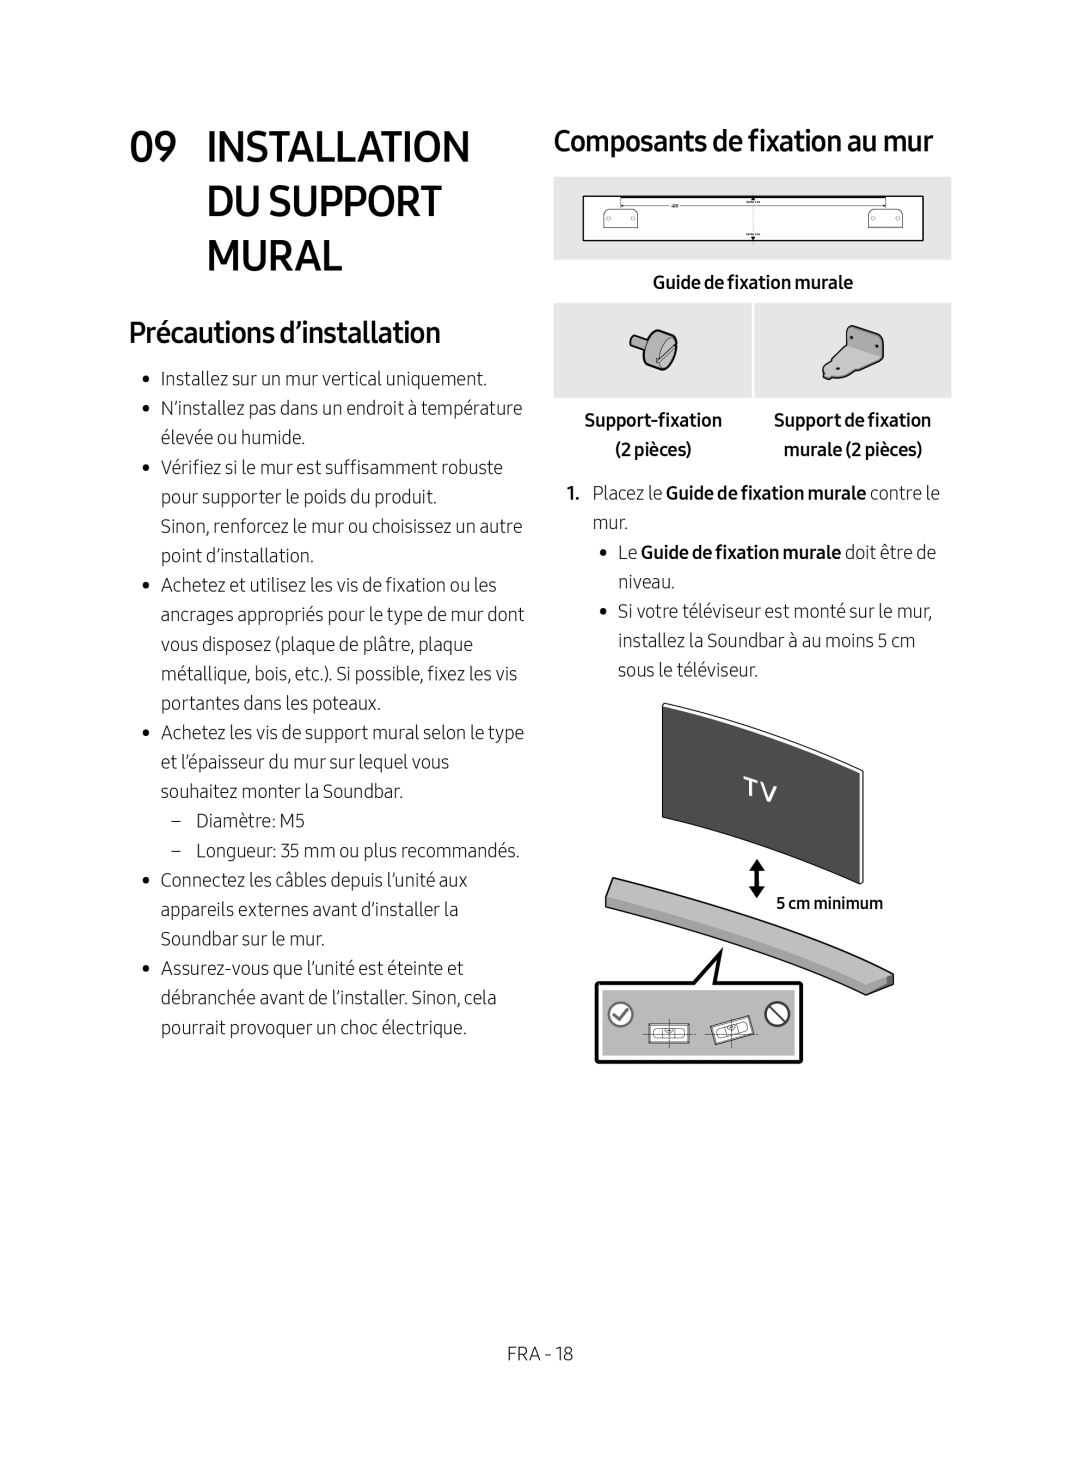 Samsung HW-M4500/EN manual Installation du Support Mural, Composants de fixation au mur, Précautions d’installation 